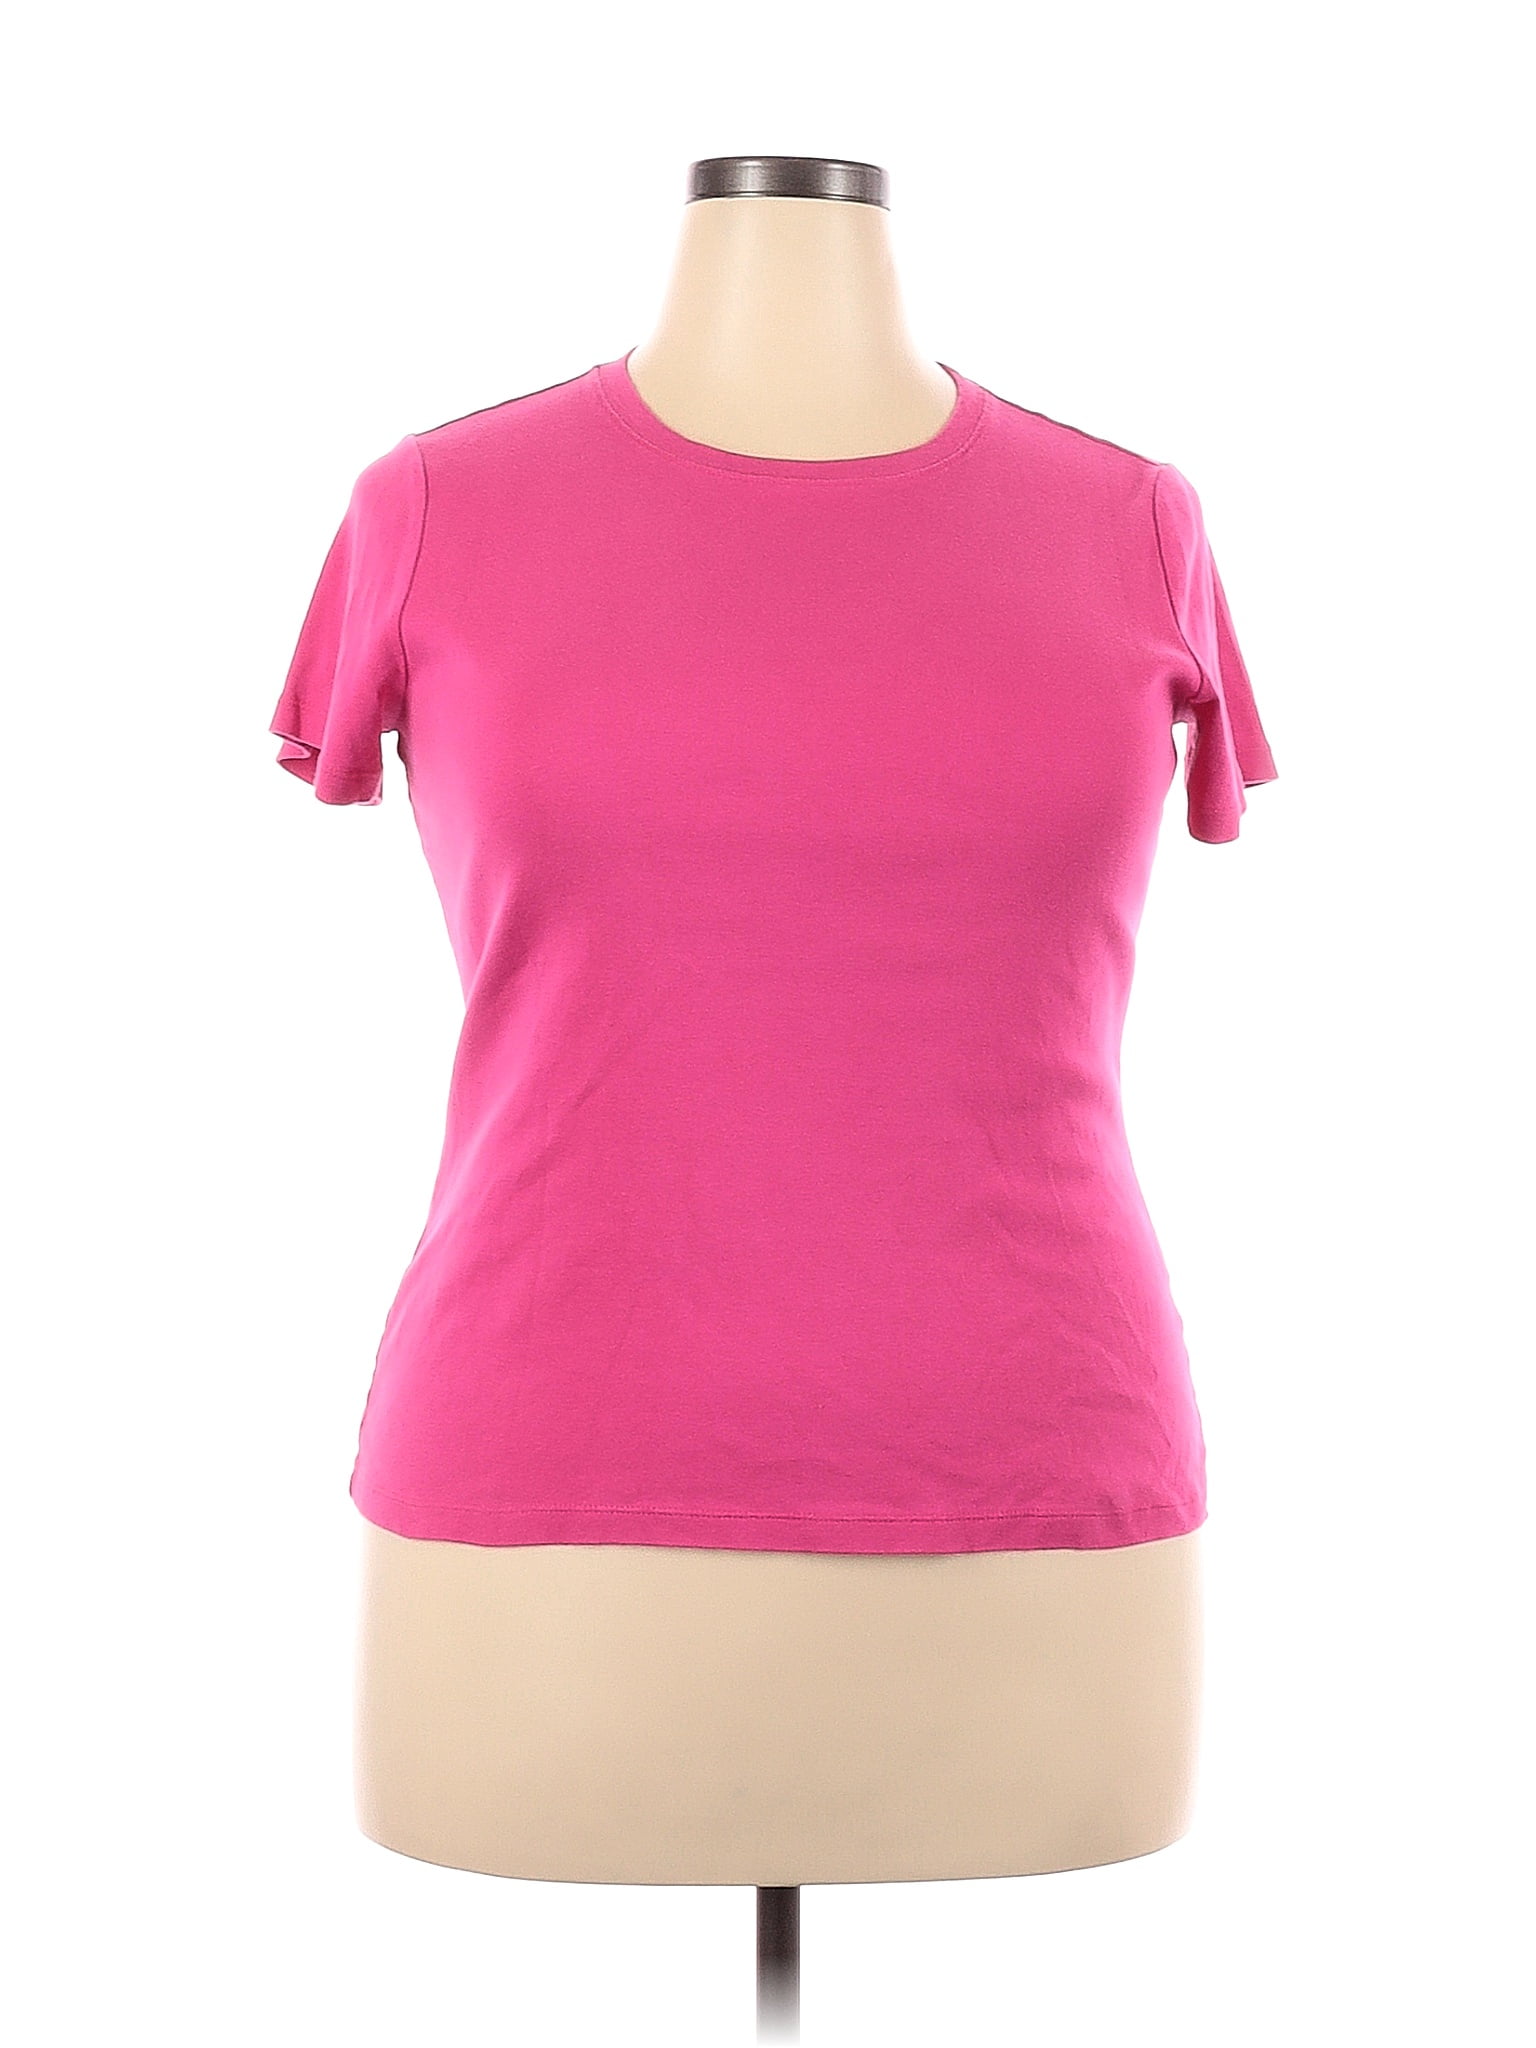 Caslon 100% Cotton Pink Short Sleeve T-Shirt Size 1X (Plus) - 56% off ...